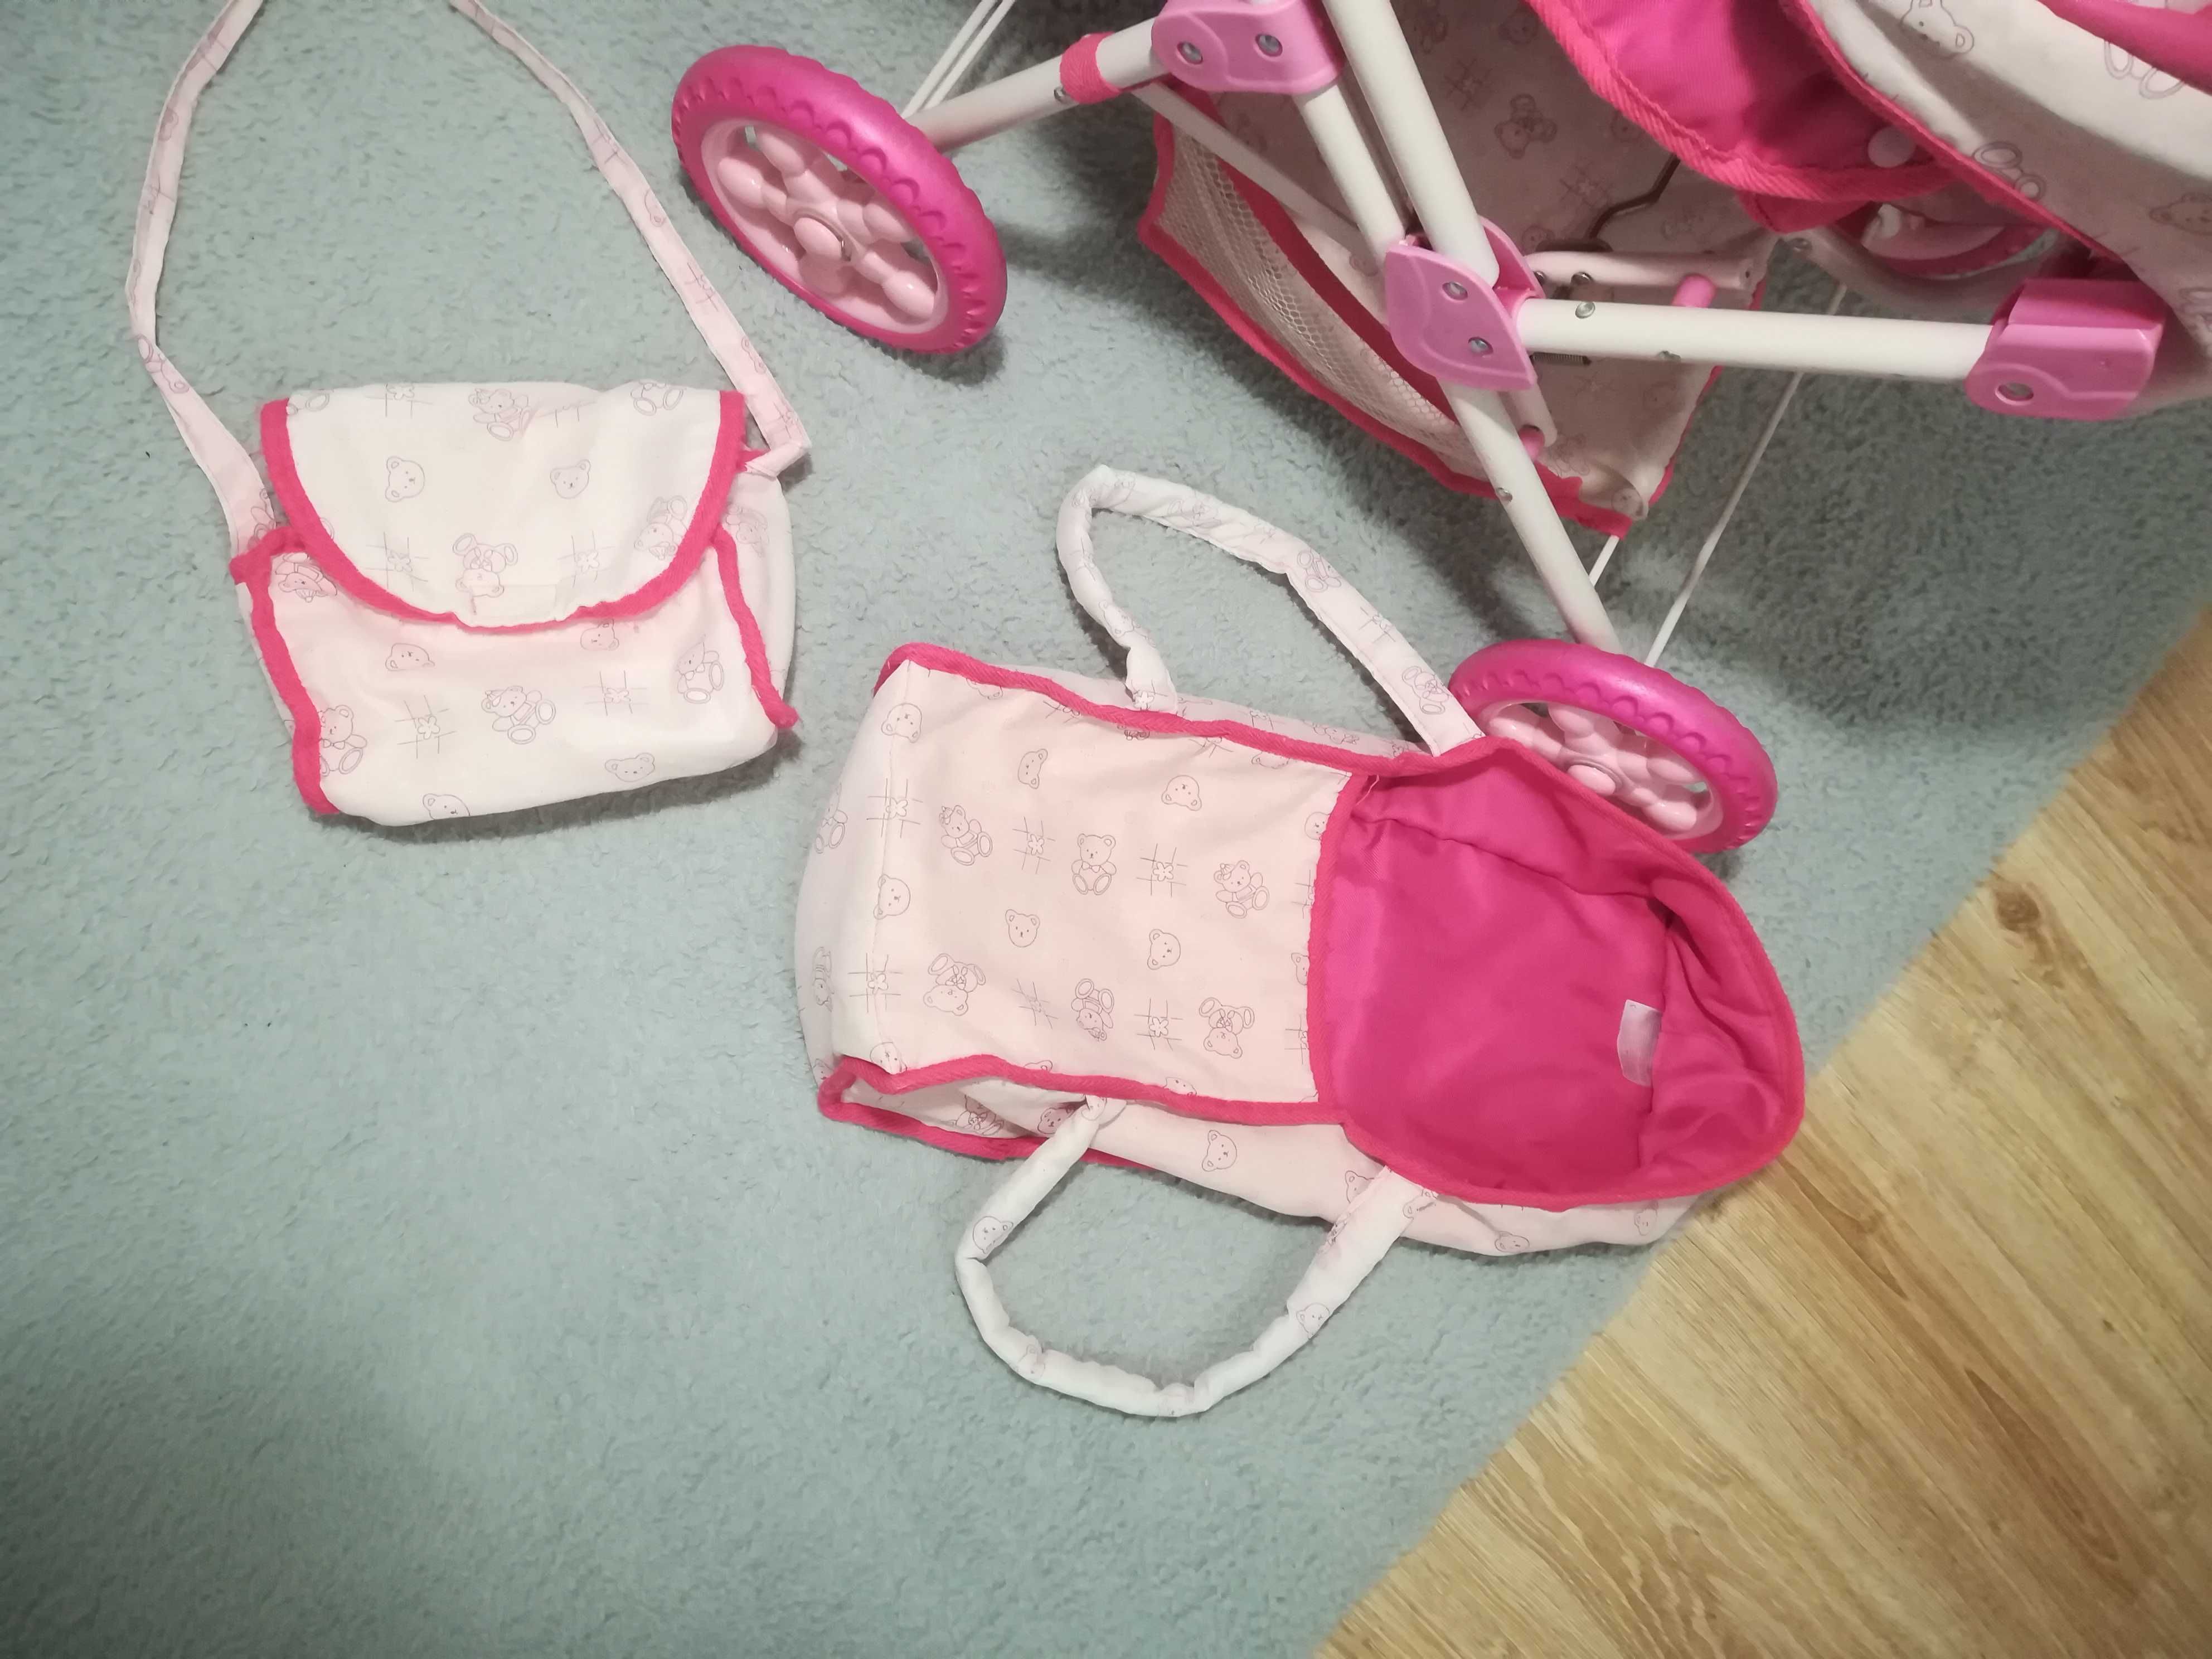 Wózek dla lalek różowy